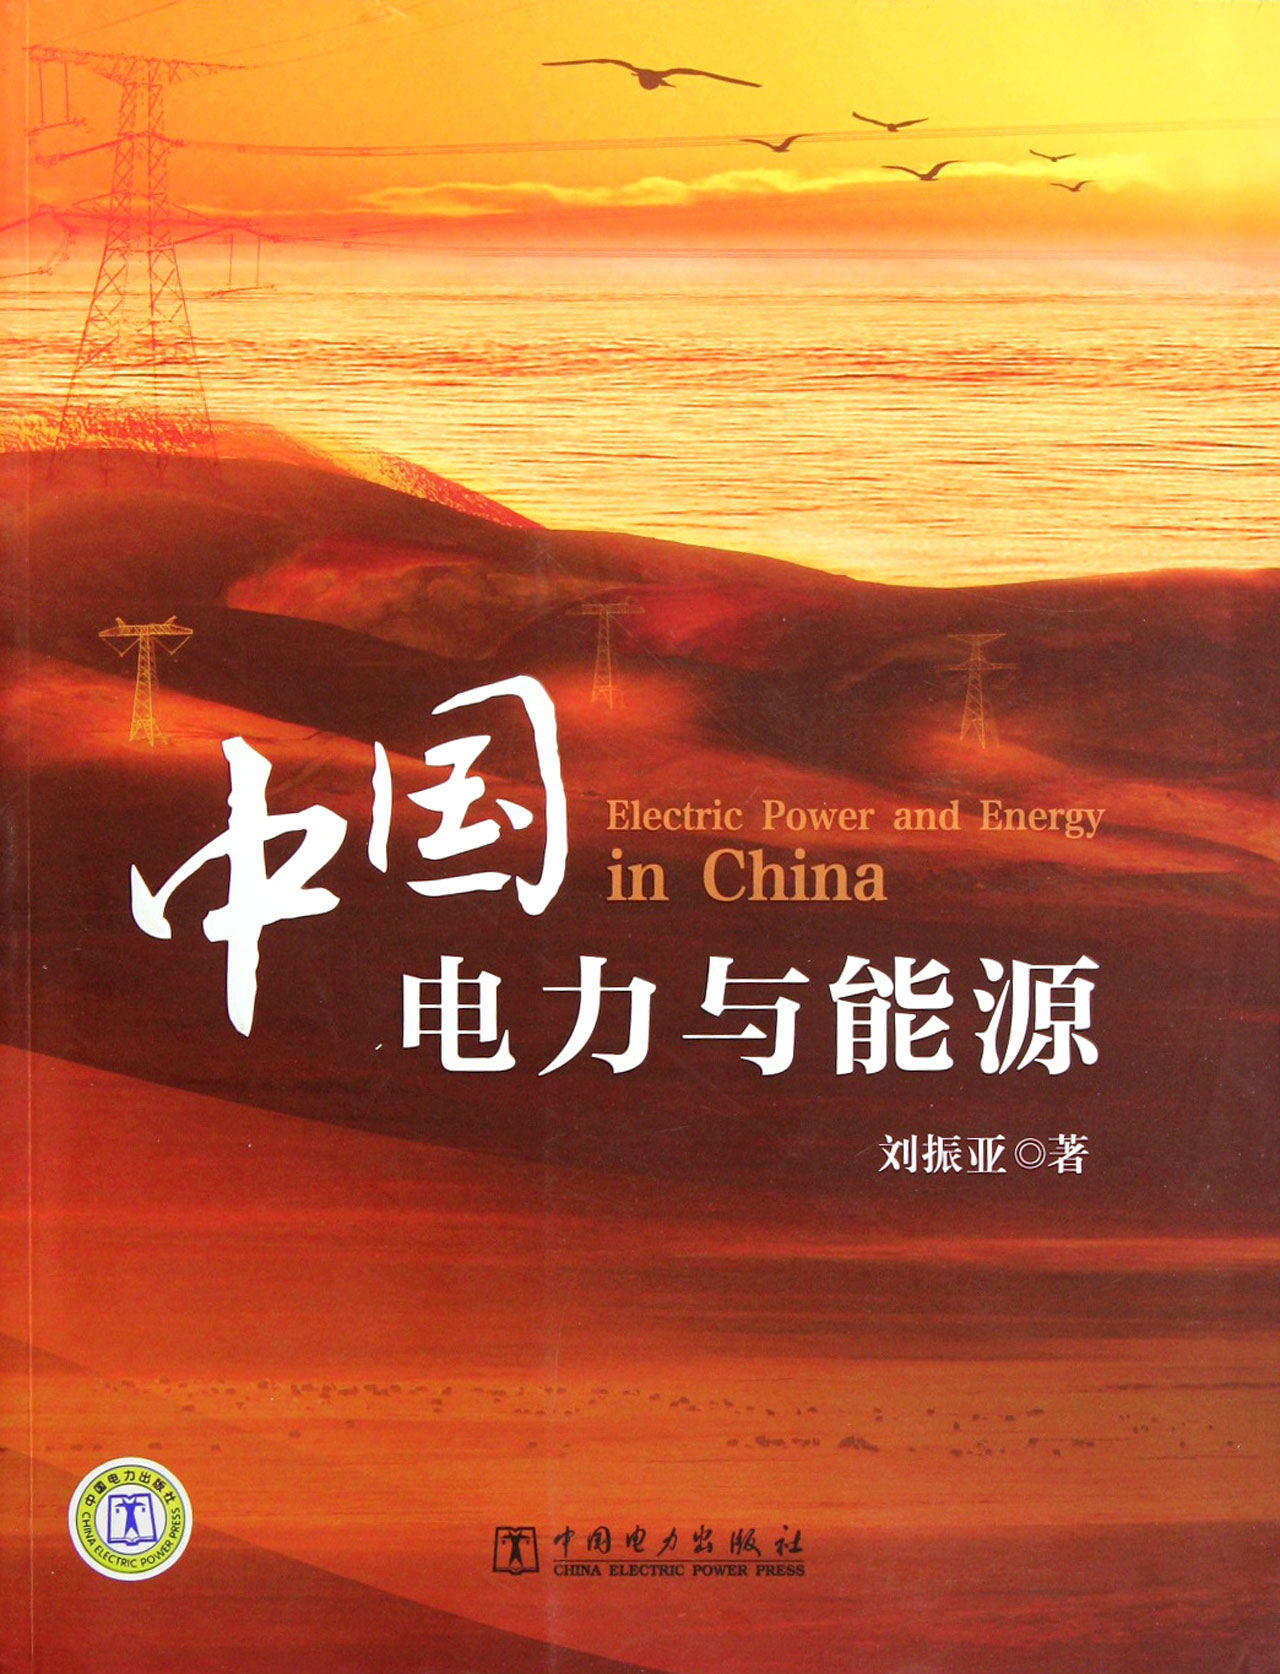 中国电力与能源 工业技术 刘振亚著 中国电力出版社 9787512326675 txt格式下载